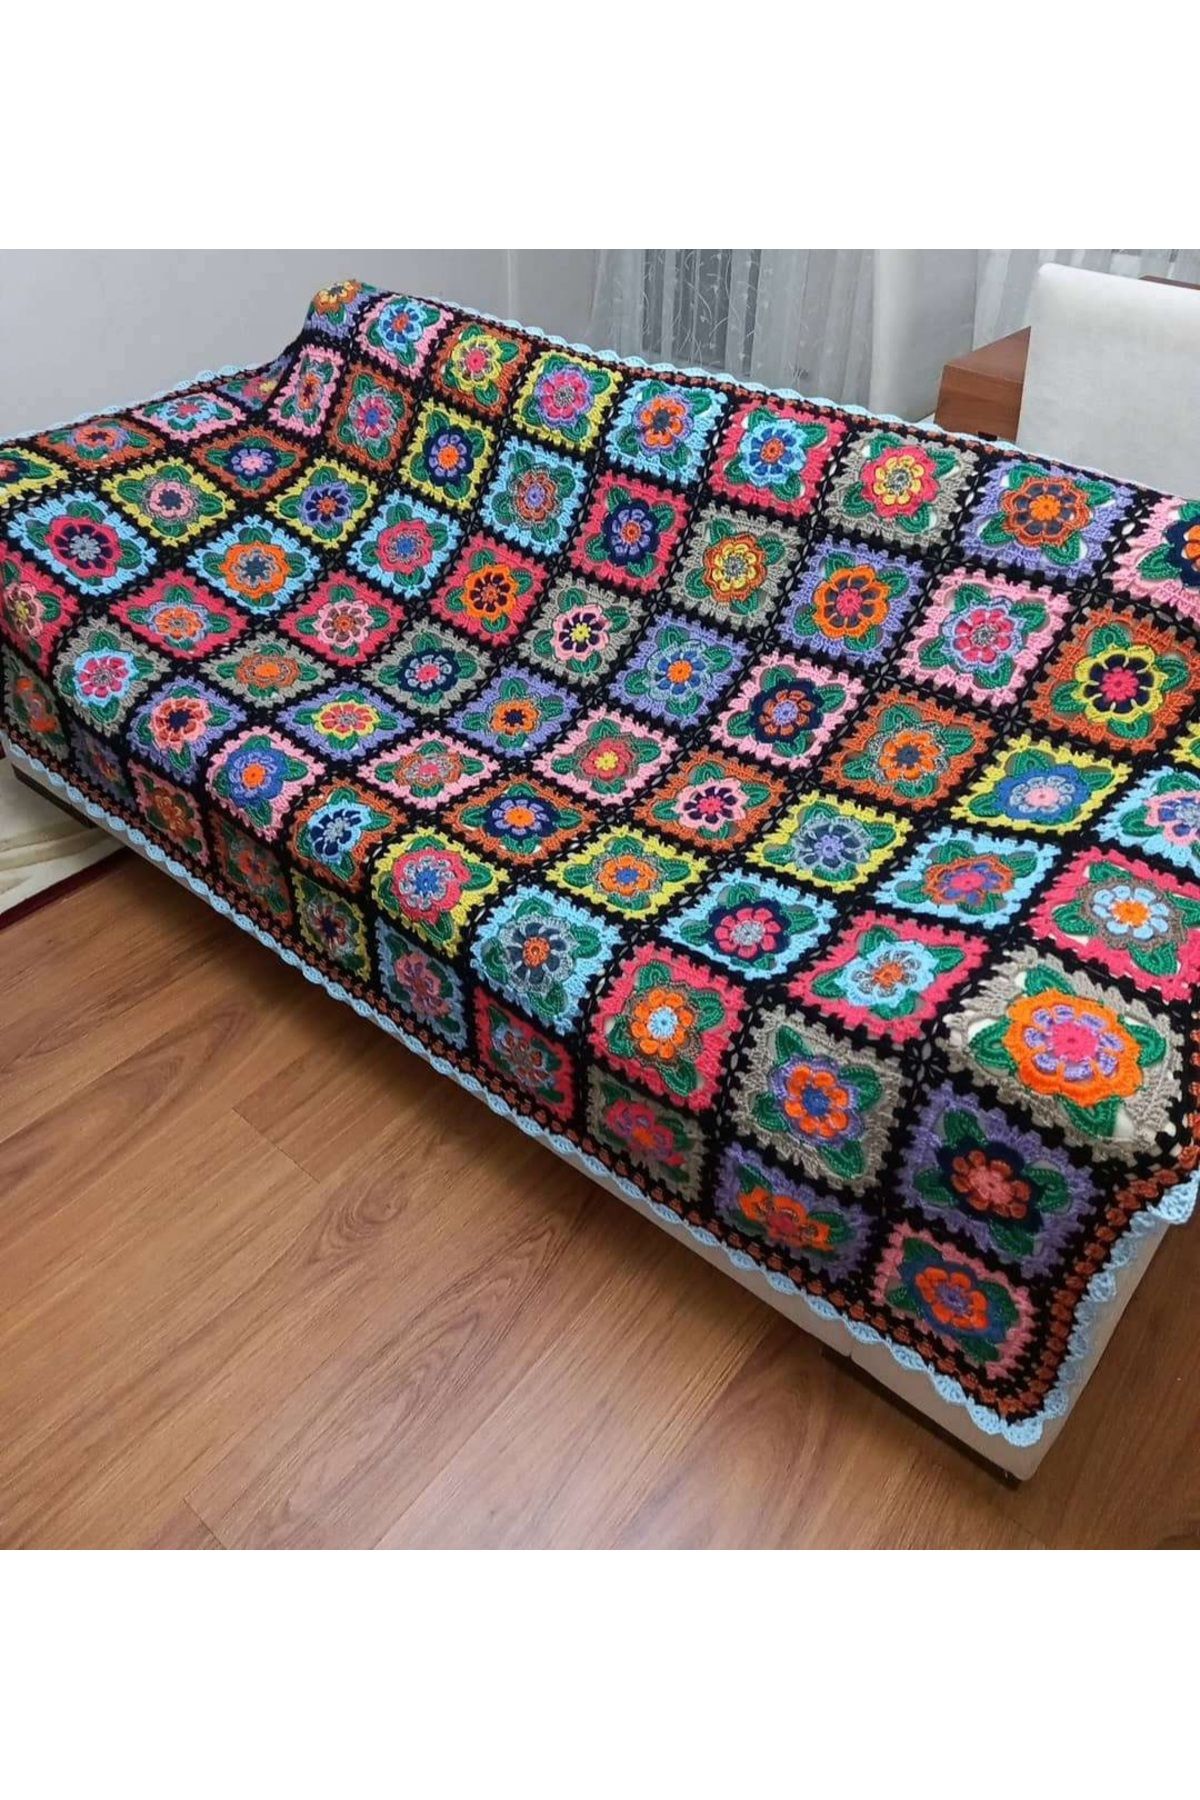 YELKENPET El örgüsü tek kişilik motifli örme battaniye, yatak örtüsü, tv örtüsü, koltuk şalı 2.10x1.30 cm